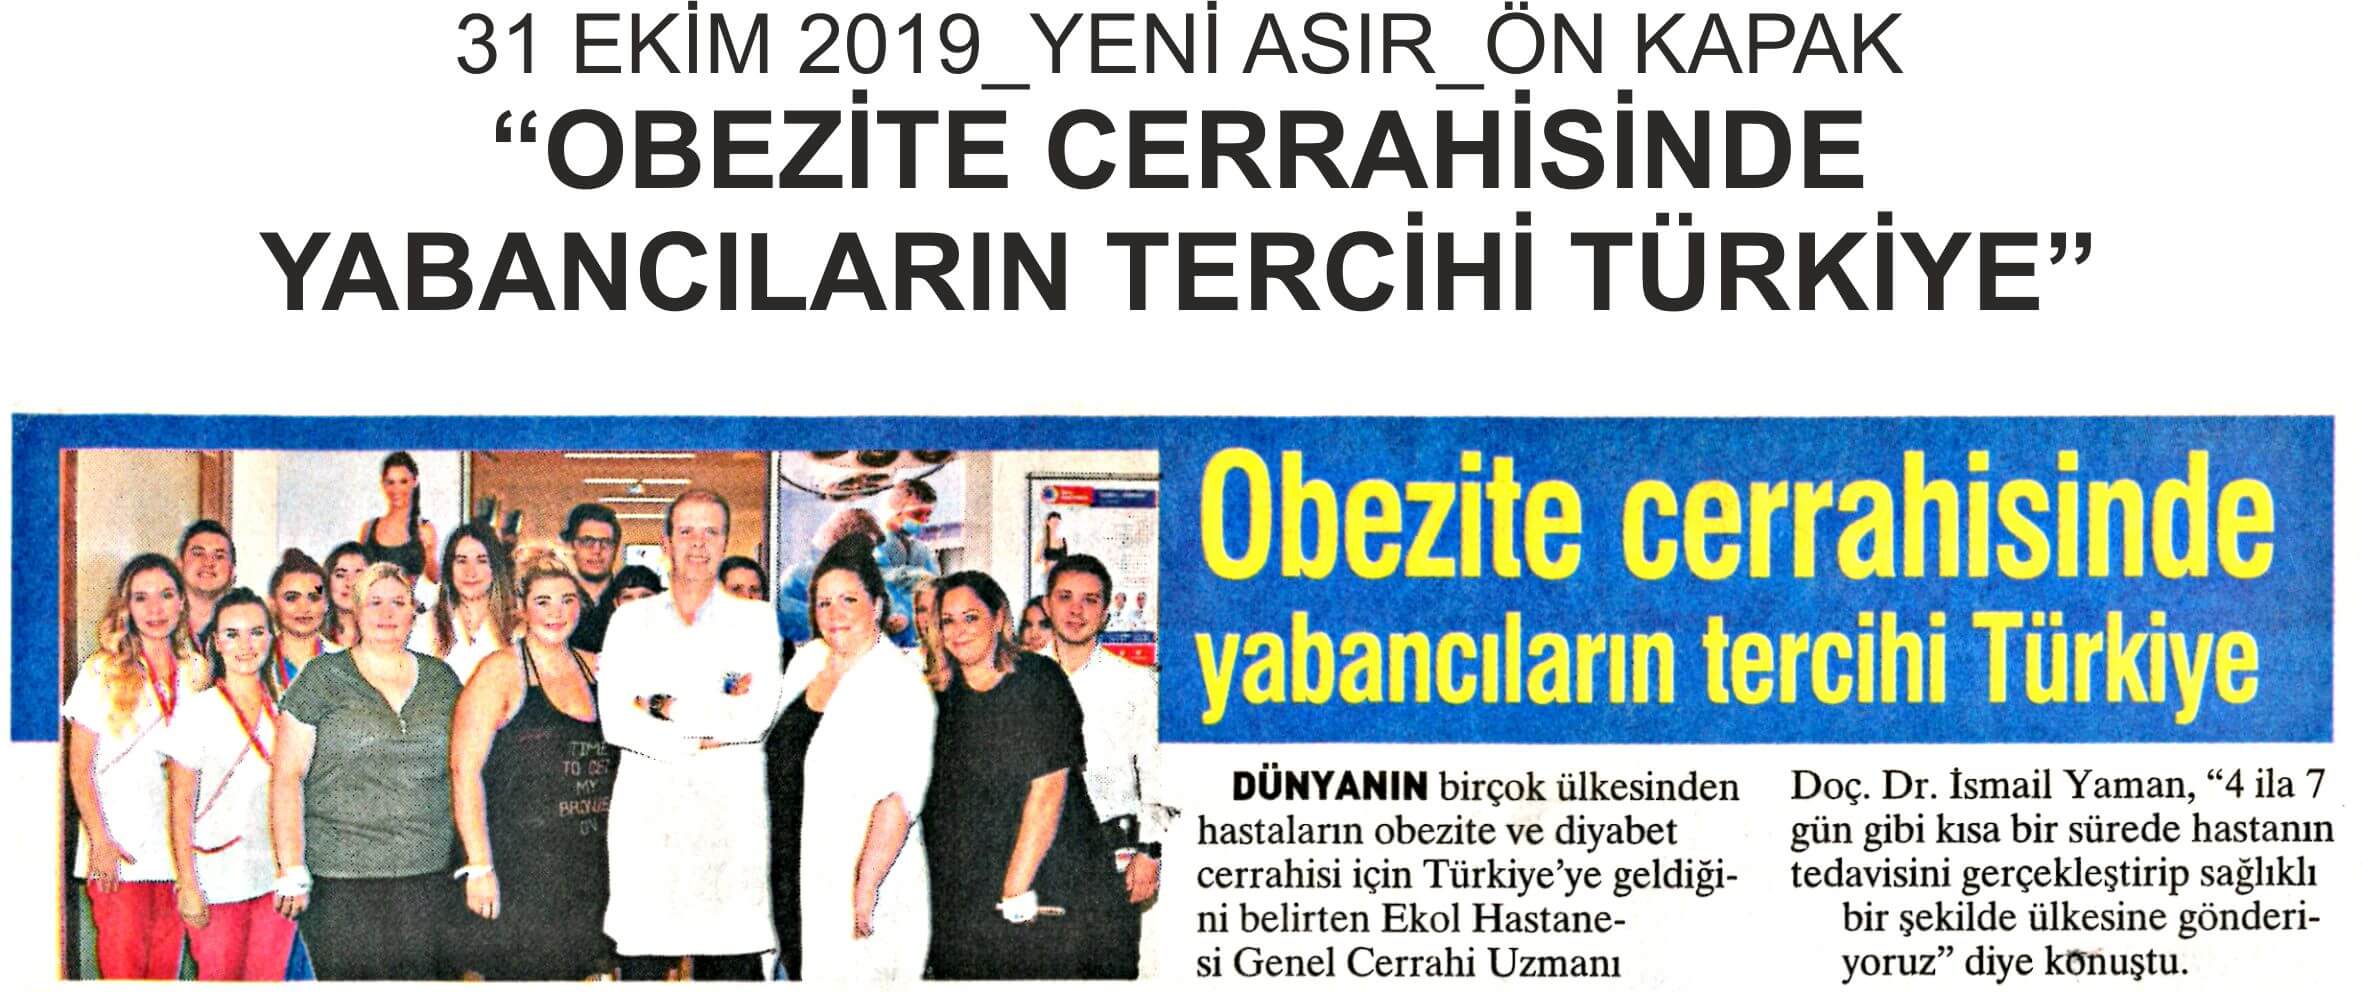 Obezite Cerrahisinde Yabancıların Tercihi Türkiye